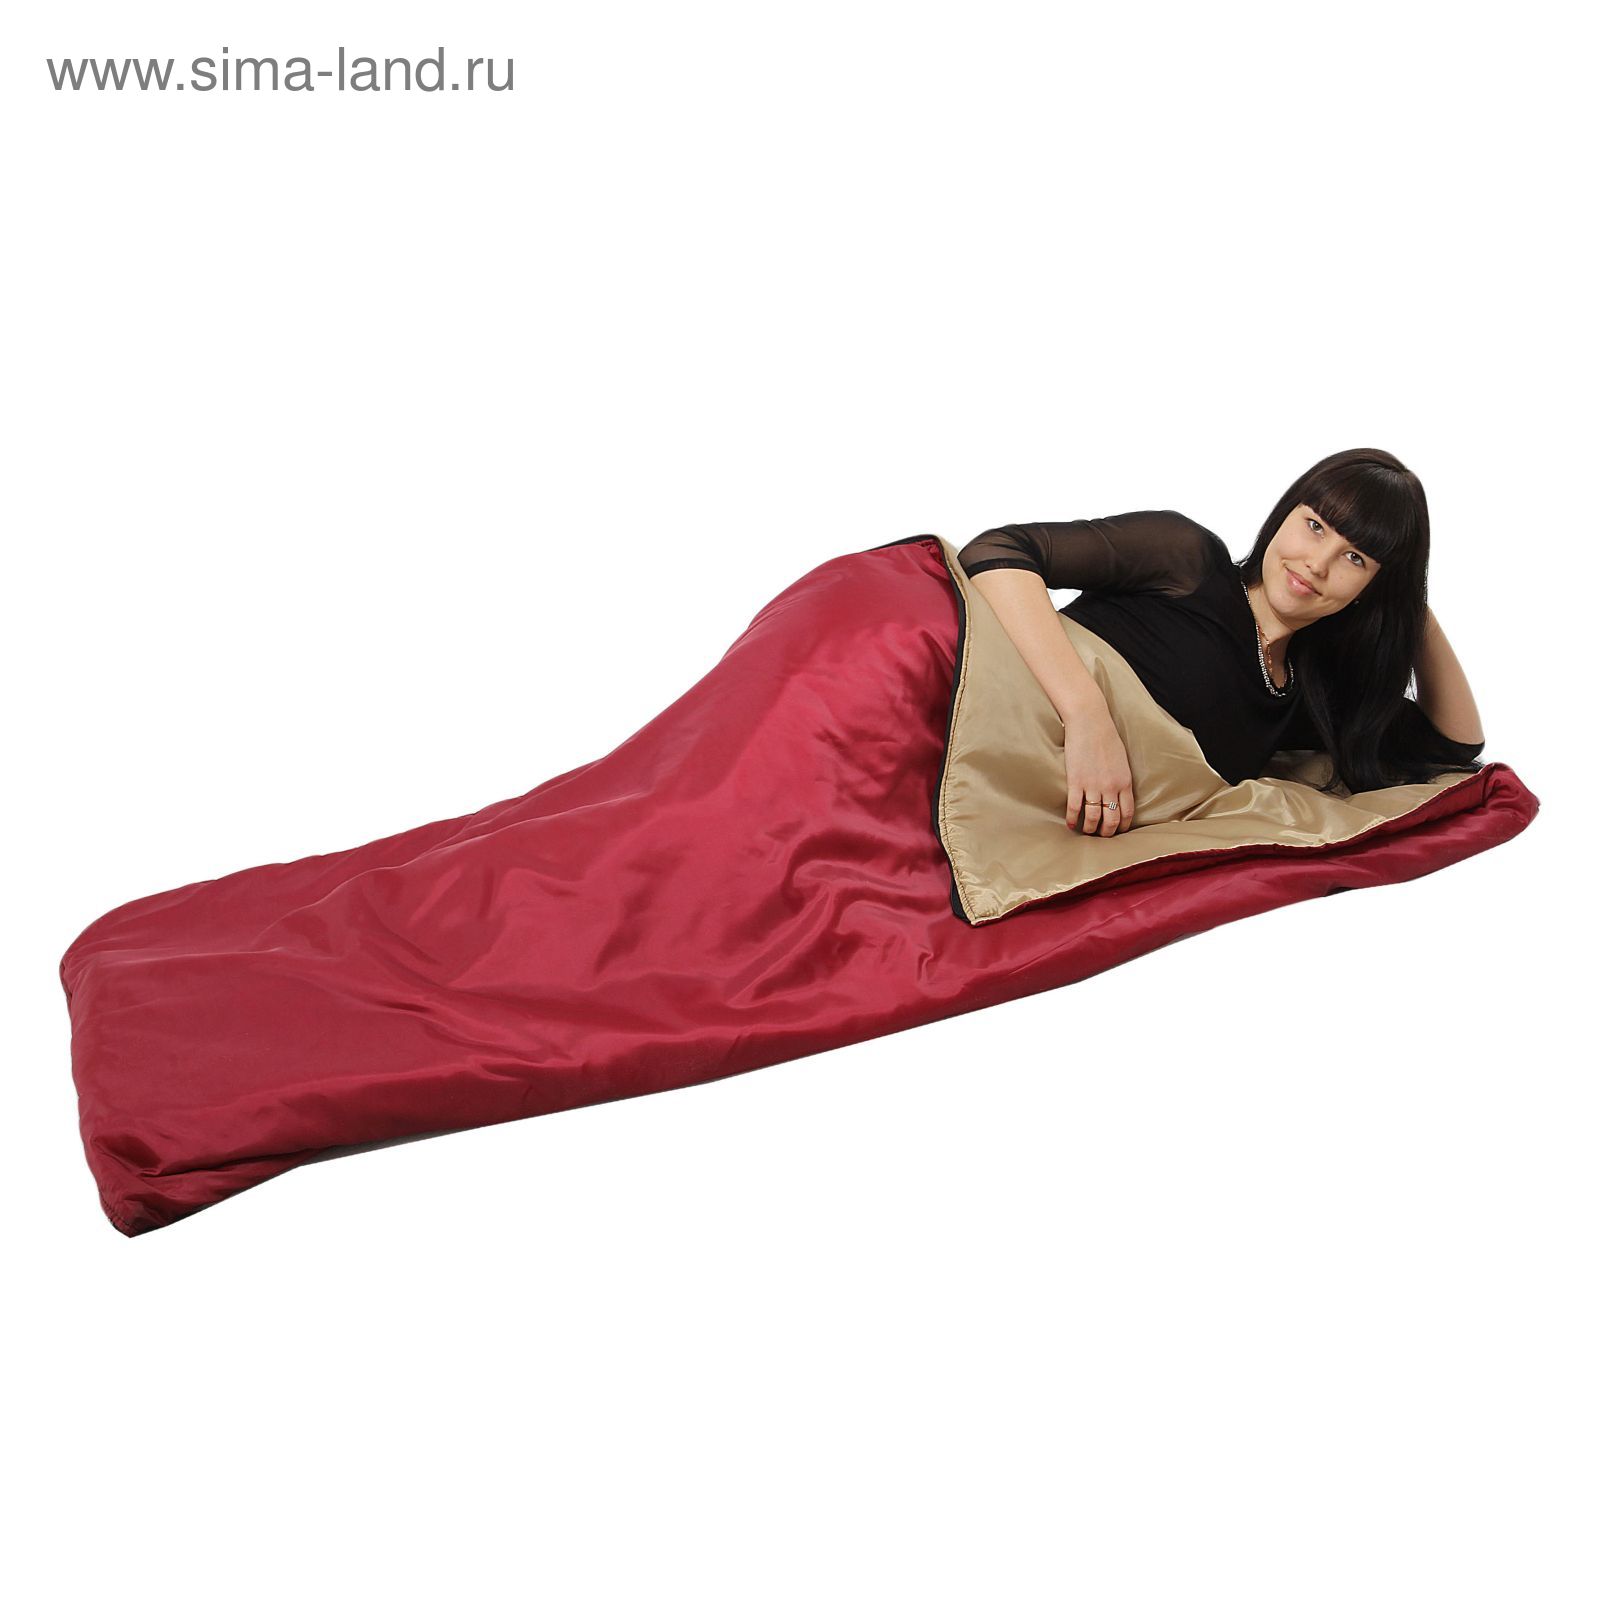 Спальный мешок-одеяло, 1,5-а слойный, размер 180 х 70 см